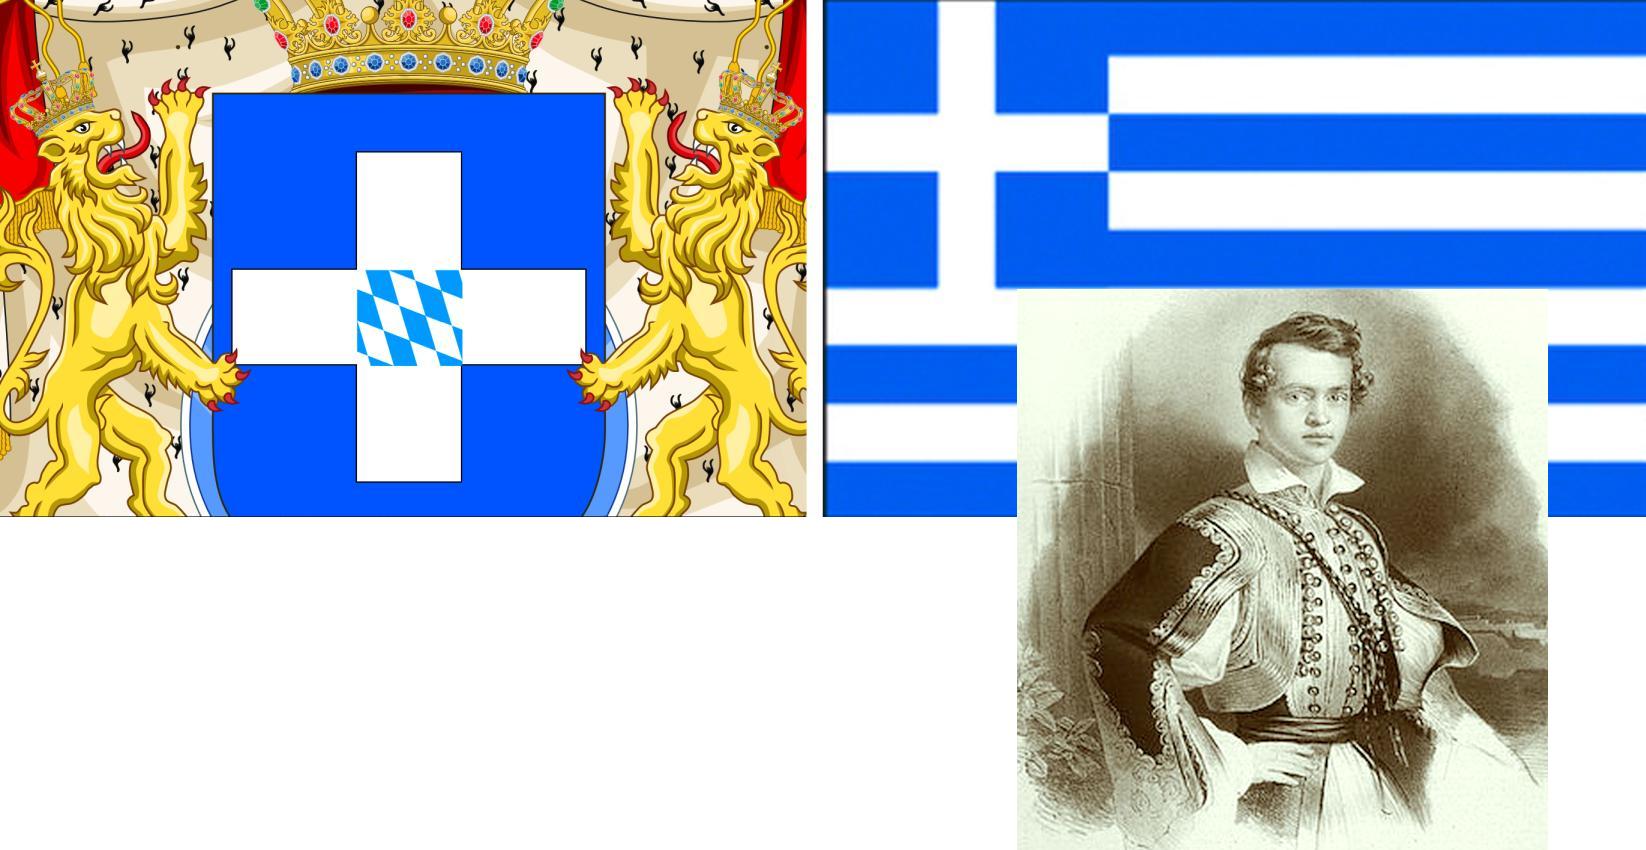 griechisches Staatswappen unter dem bayerischen König Otto bis 1862